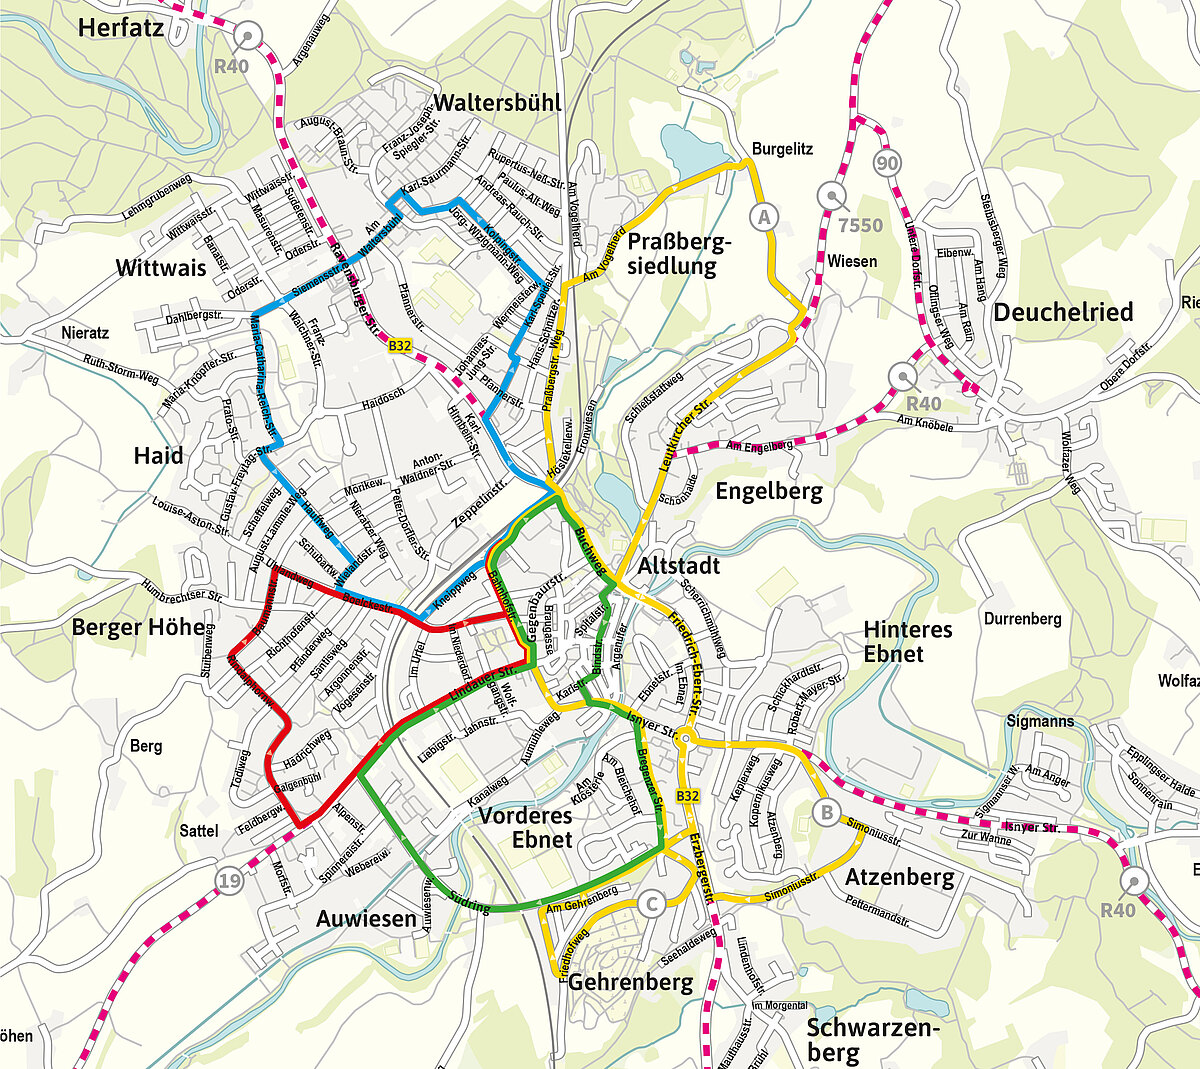 Stadtplan mit den Linien des neuen Stadtbus